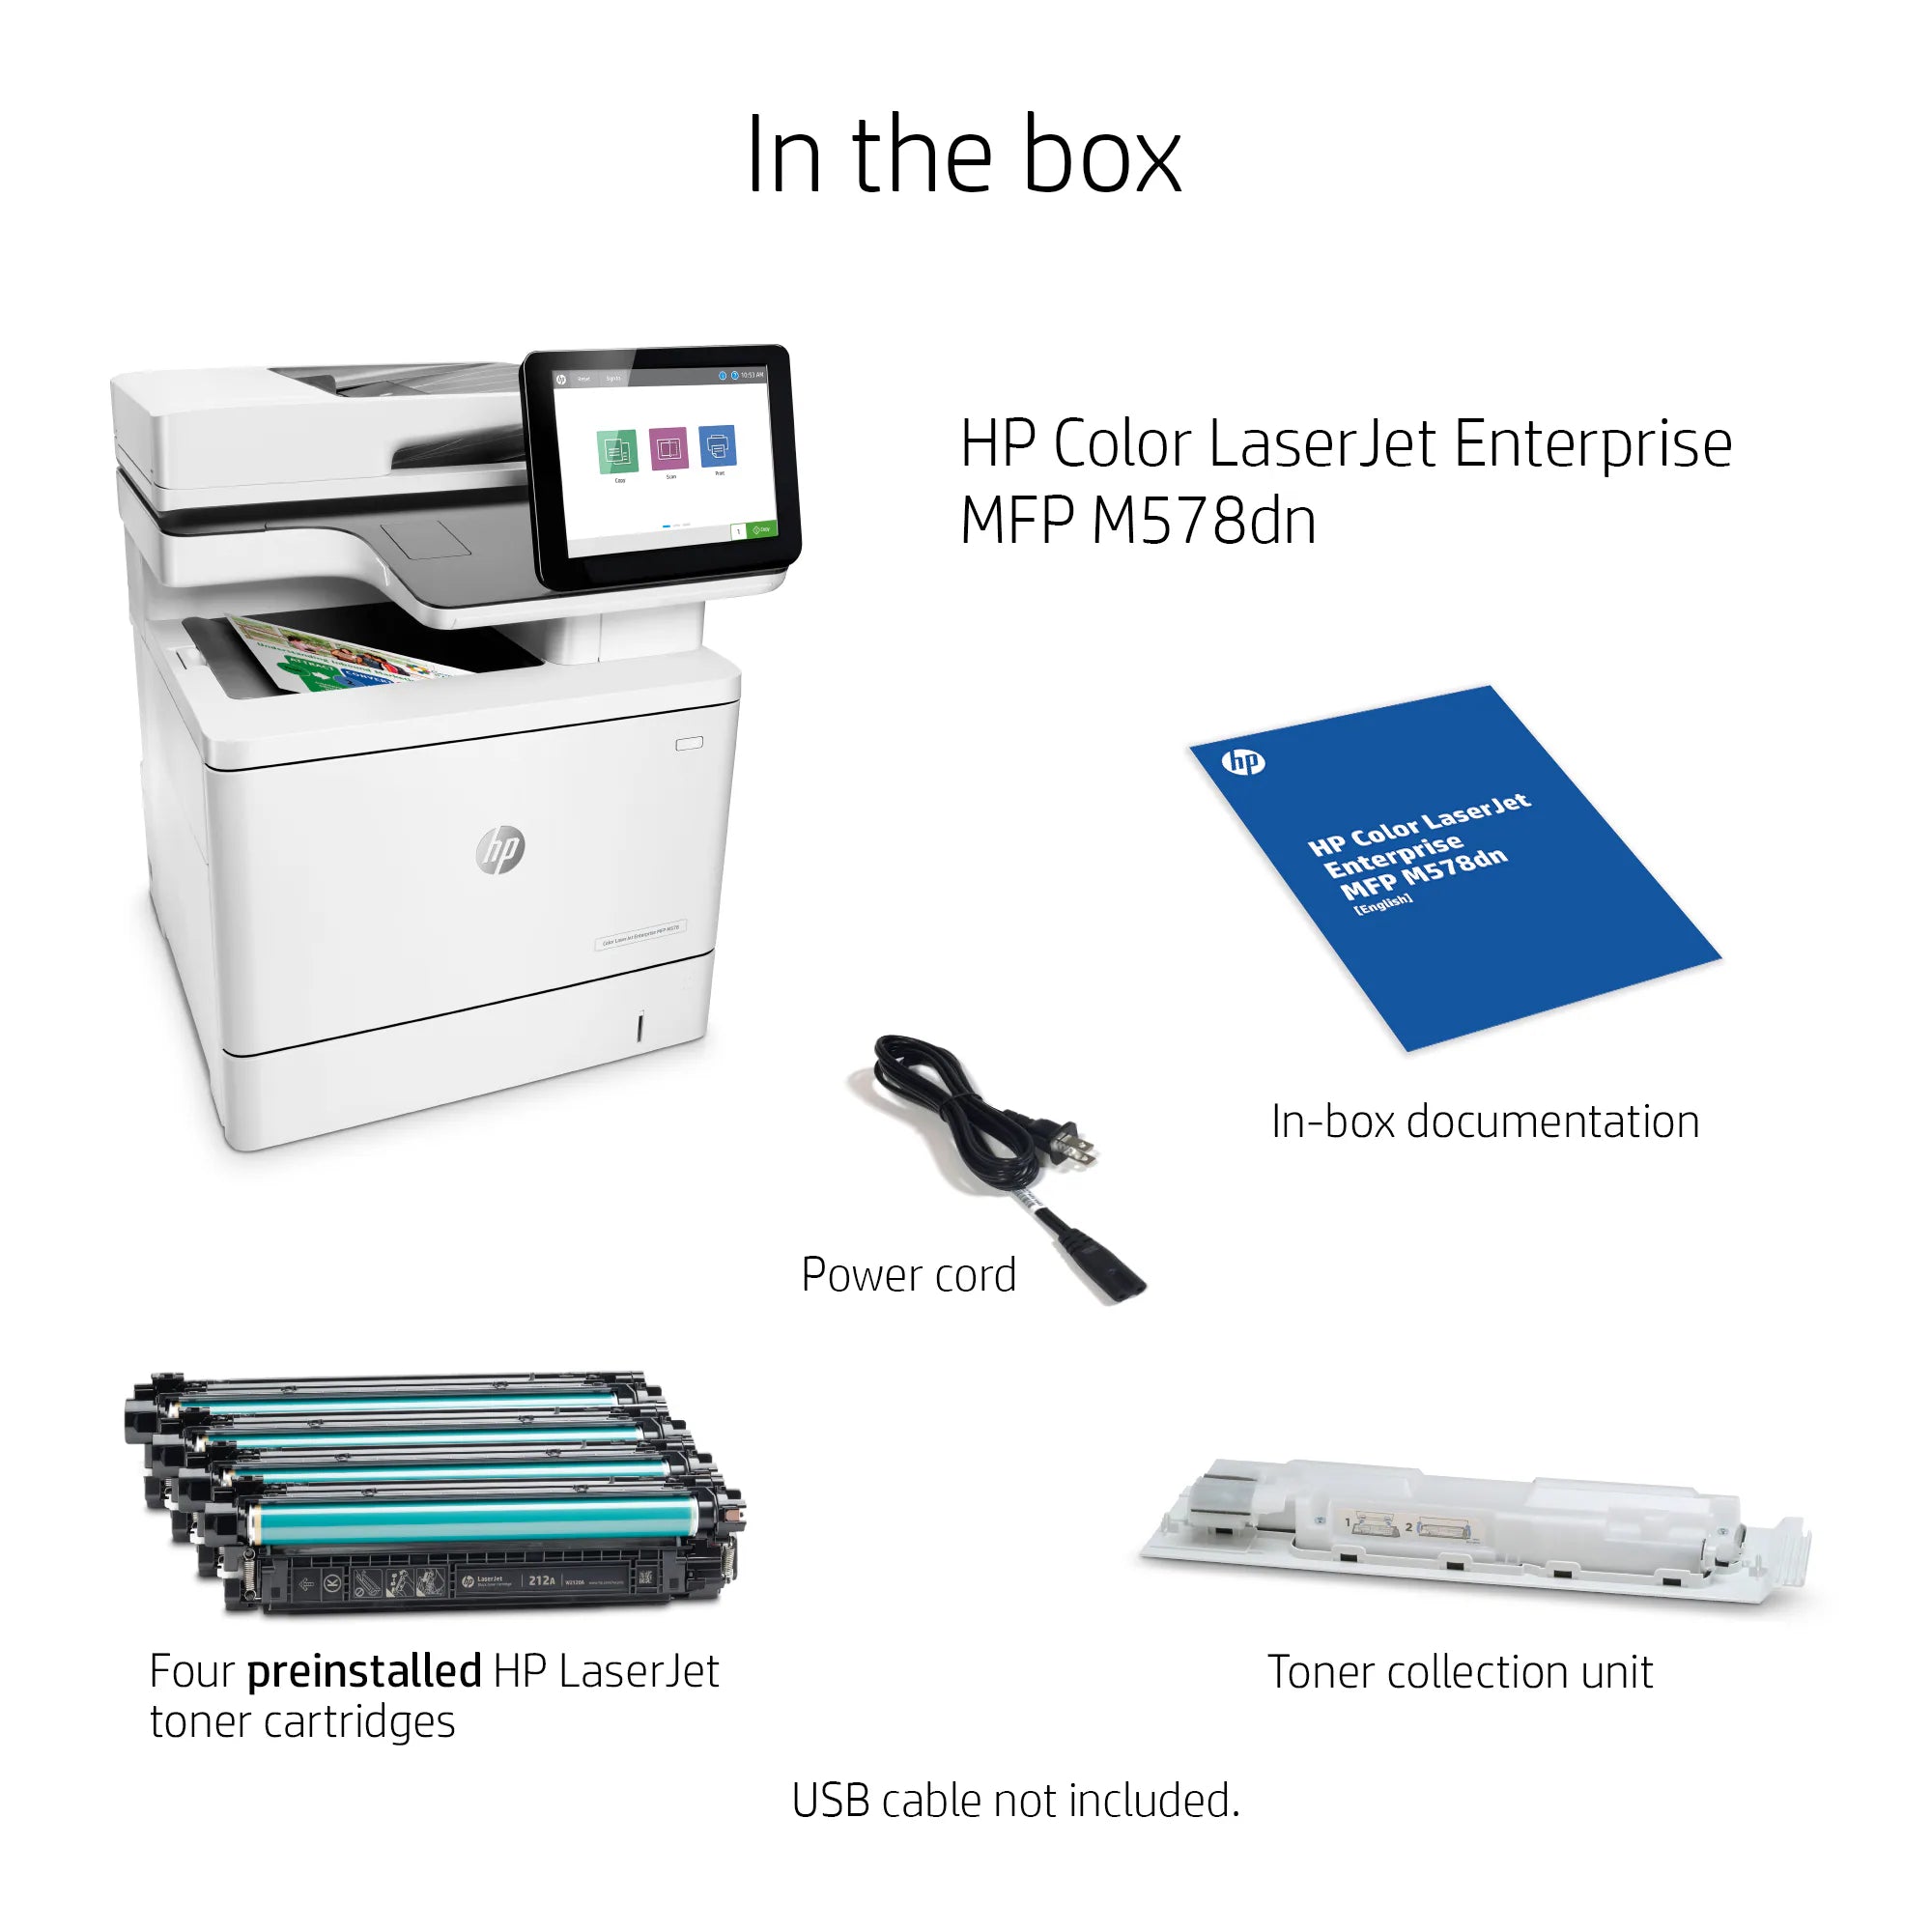 HP Color LaserJet Enterprise MFP M578dn